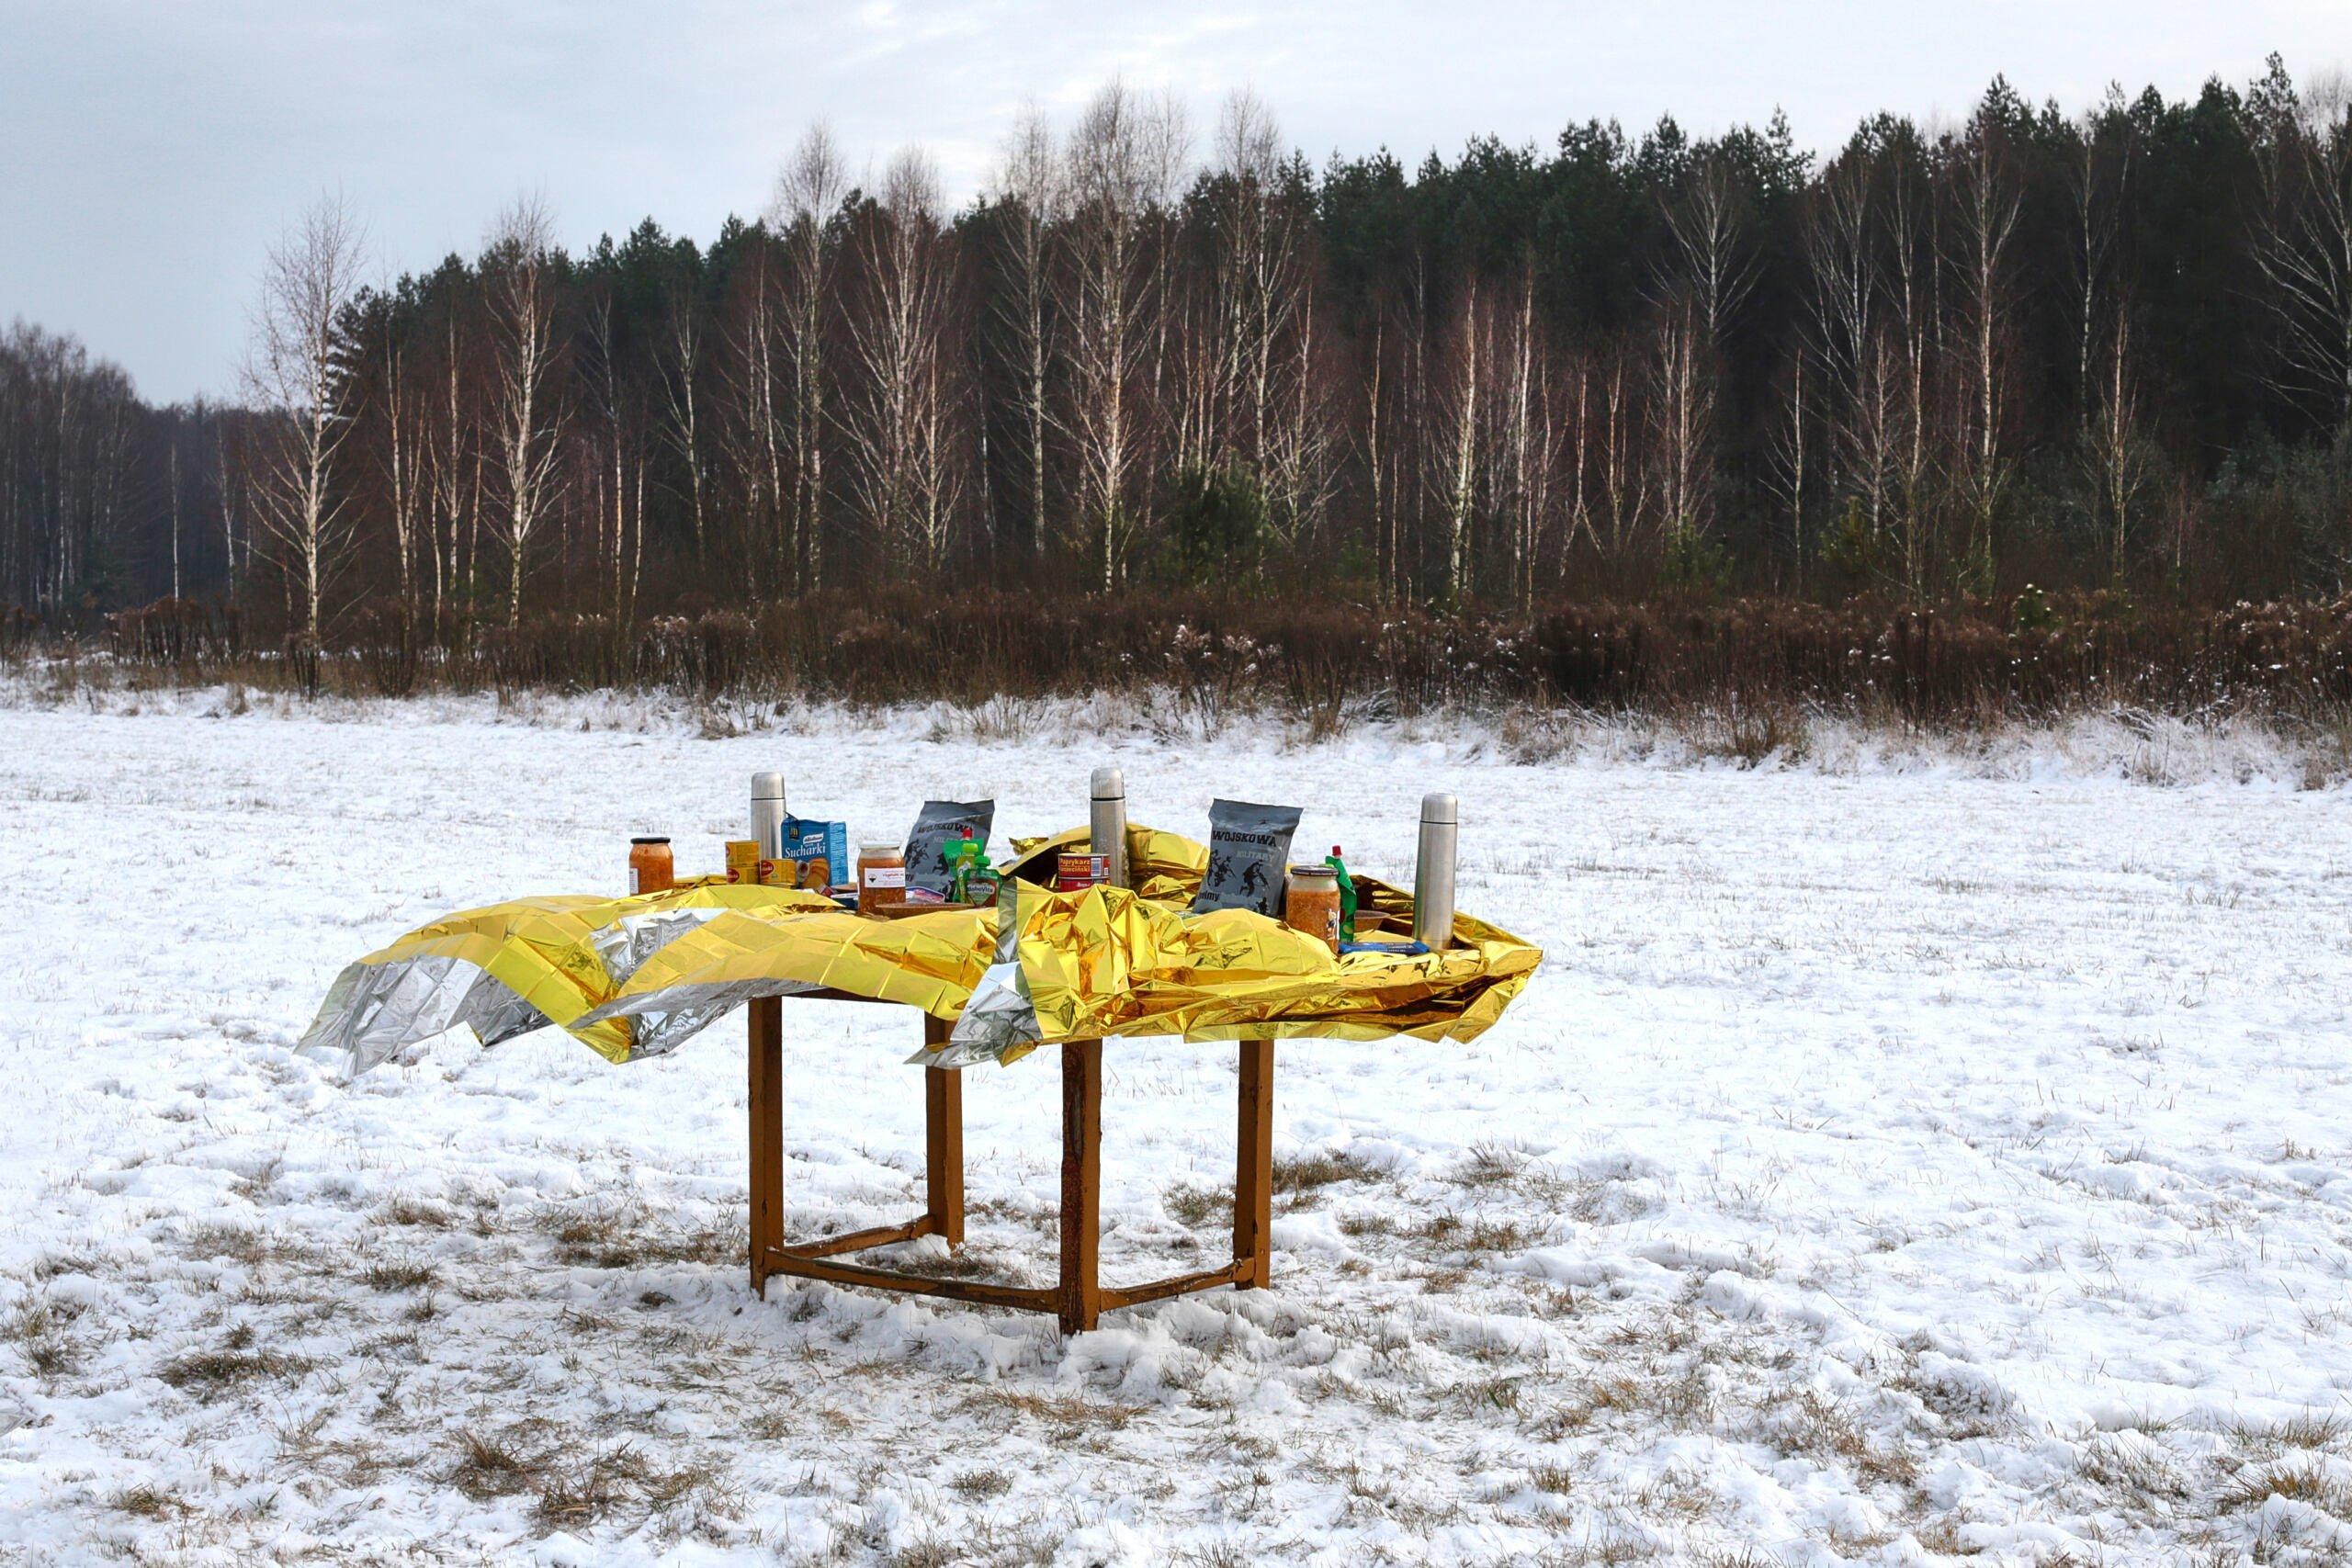 Stół wigilijny dla uchodźców przy lesie na podlasiu, fot. Maciej Niemojewski